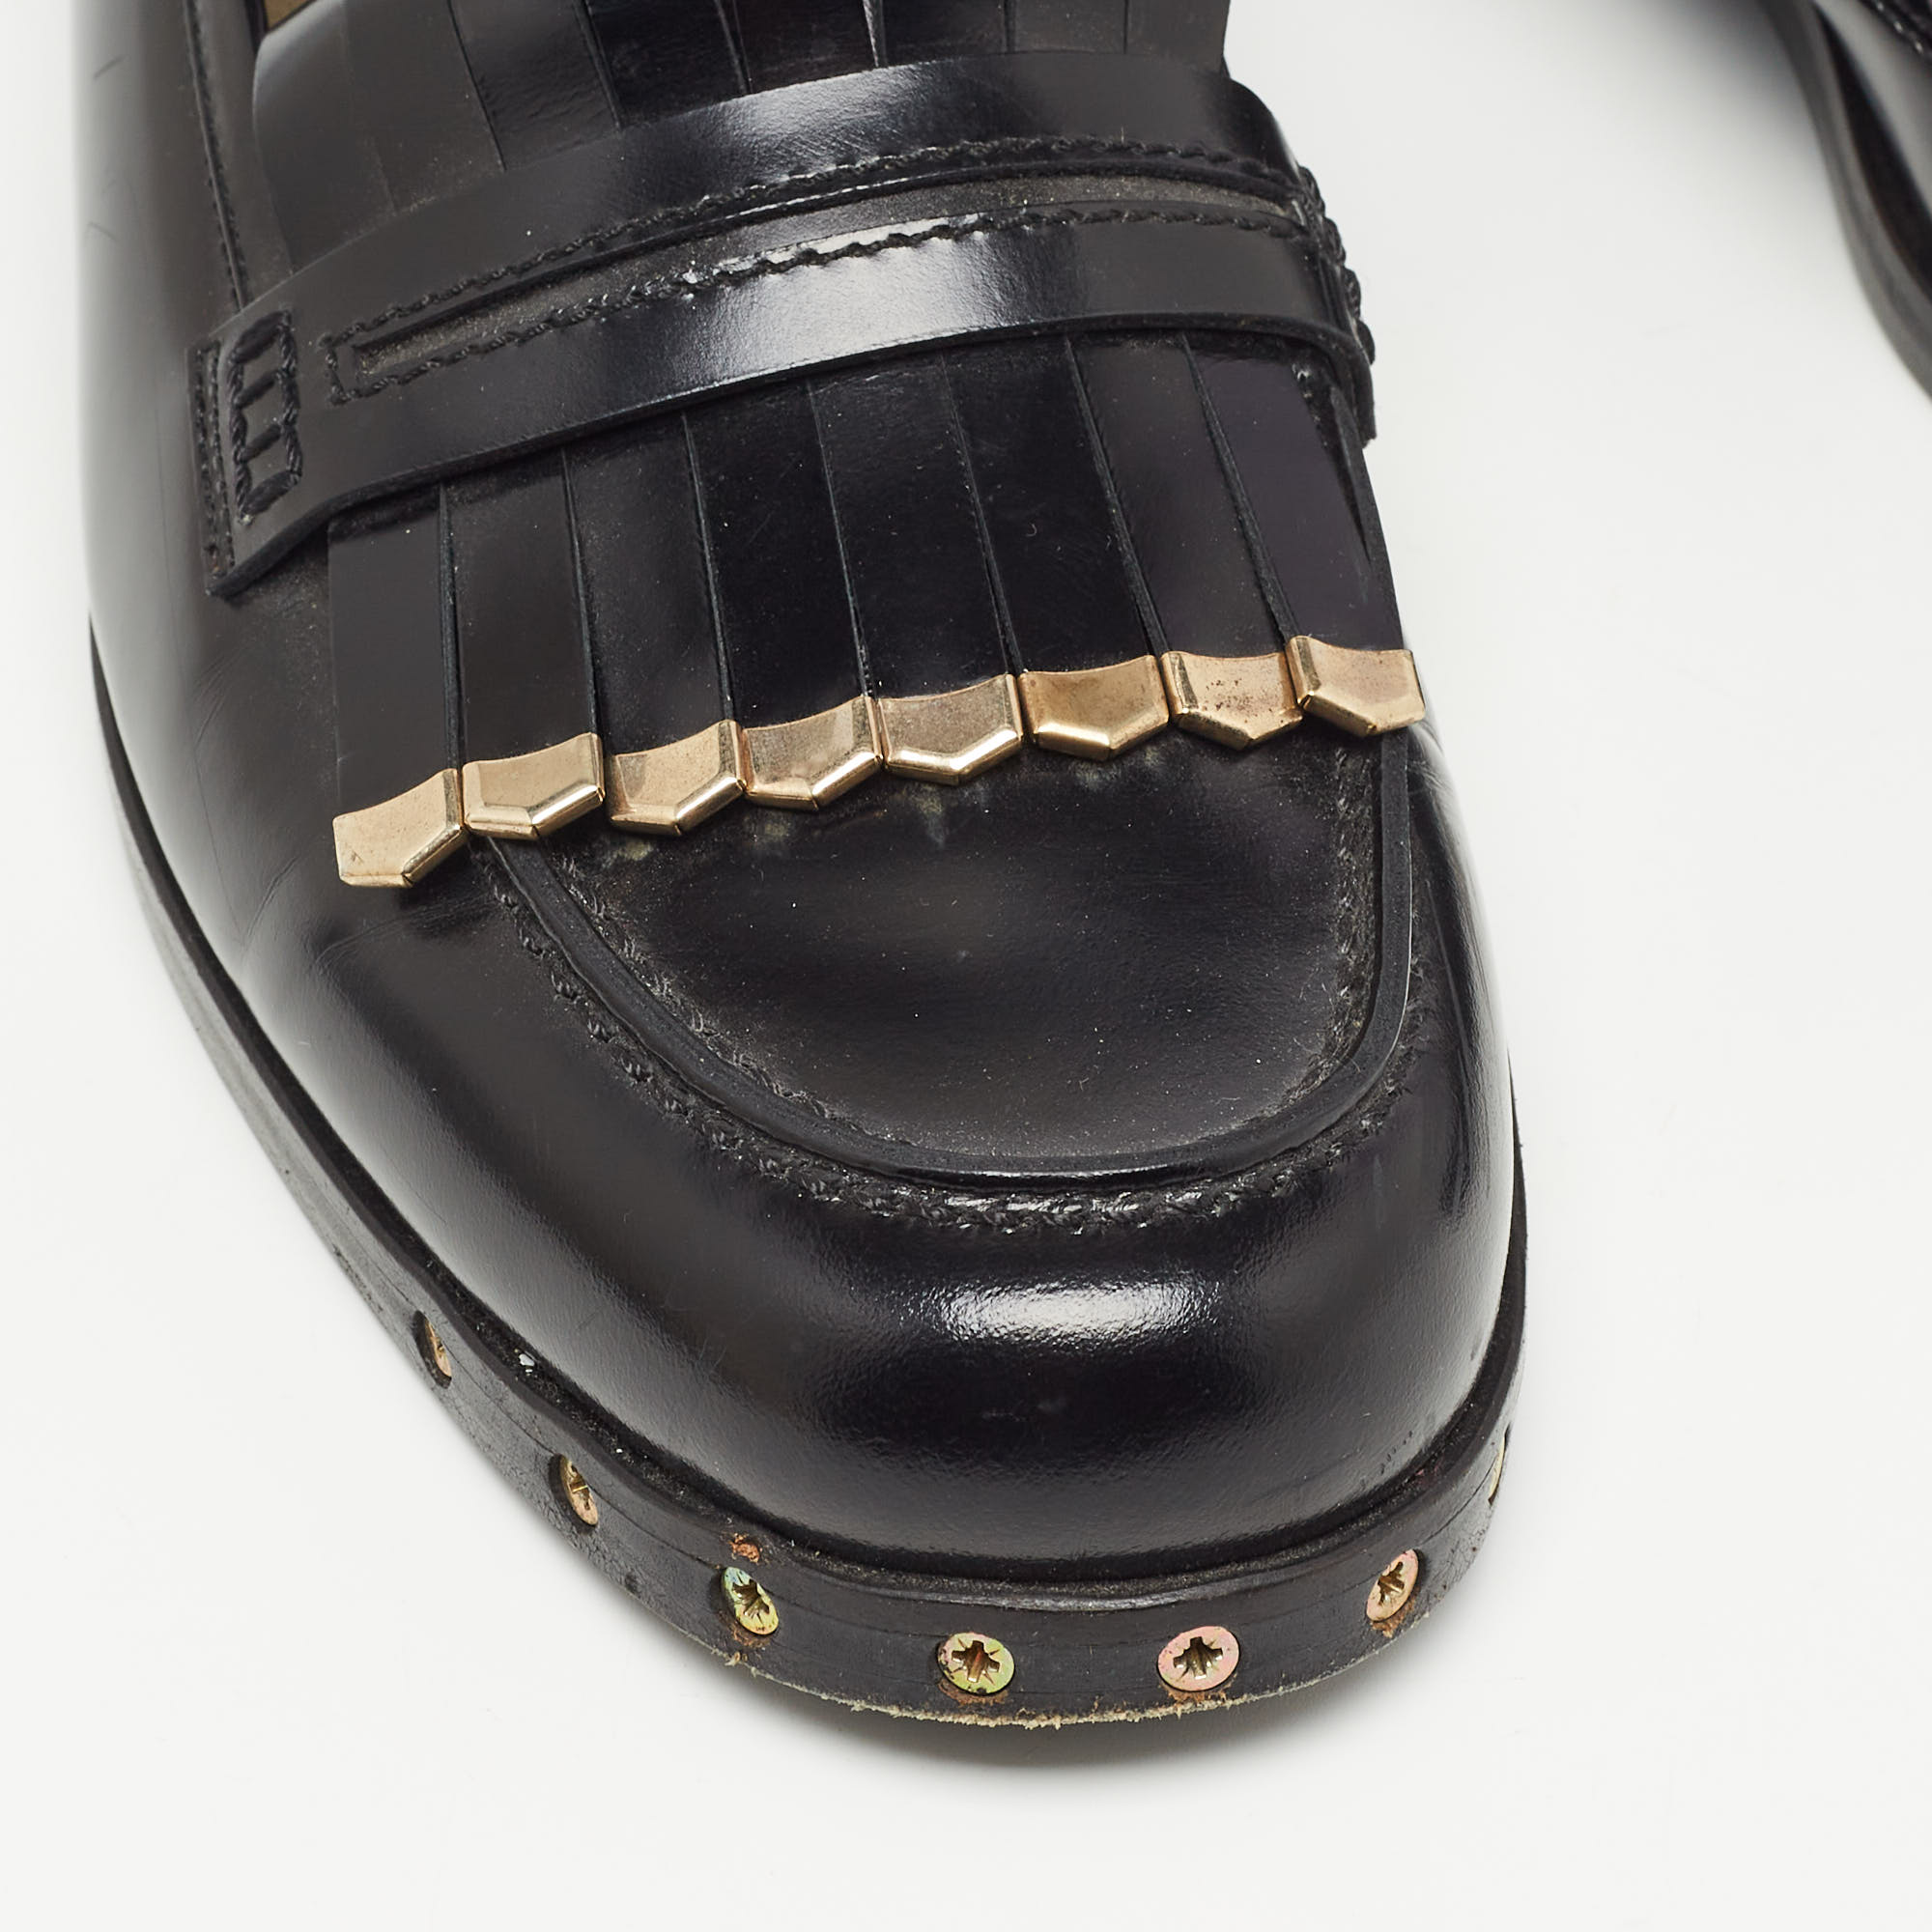 Lanvin Black Leather Fringe Loafers Size 40.5